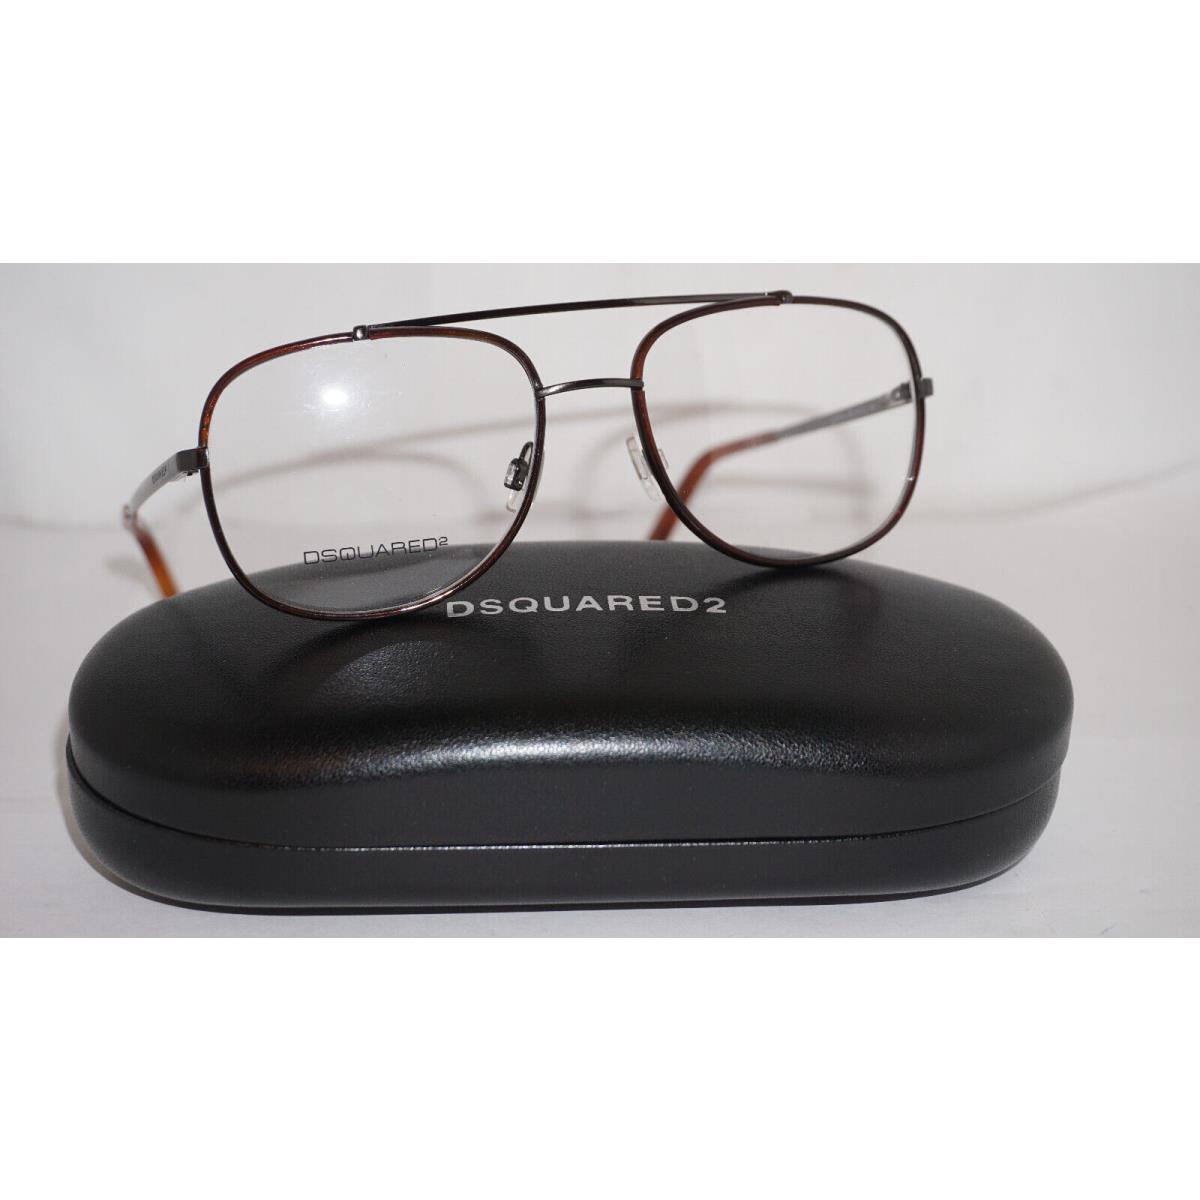 DSQUARED2 Eyeglasses Aviator Gunmetal Havana DQ5073 056 53 17 140